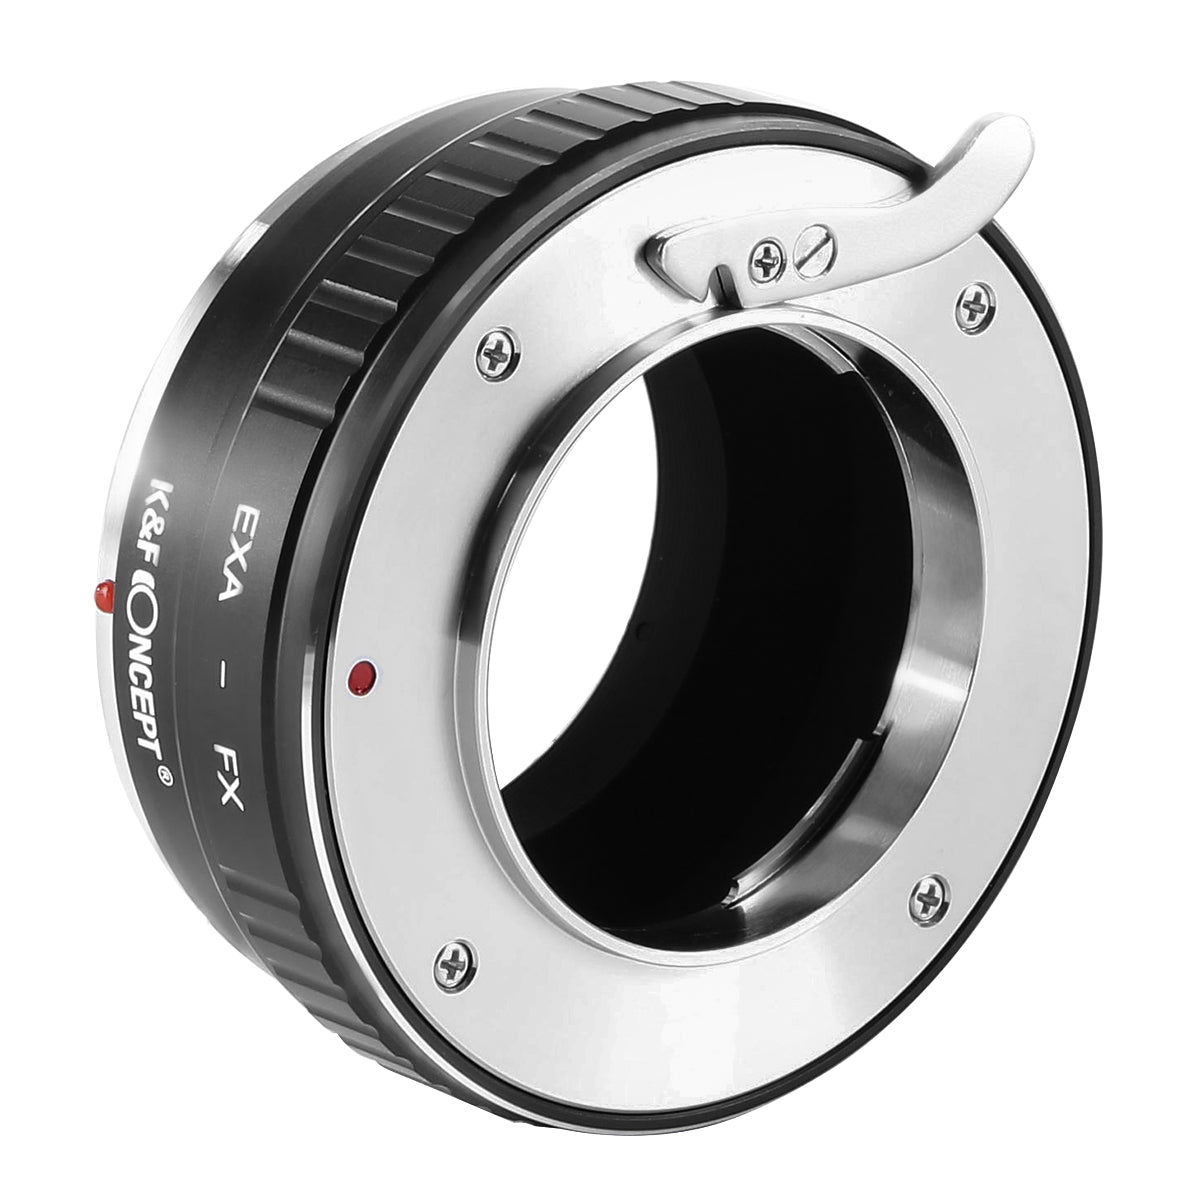 CLEARANCE SALE ! K&F CONCEPT Exakta EXA-FX Fuji X Lens mount adapter